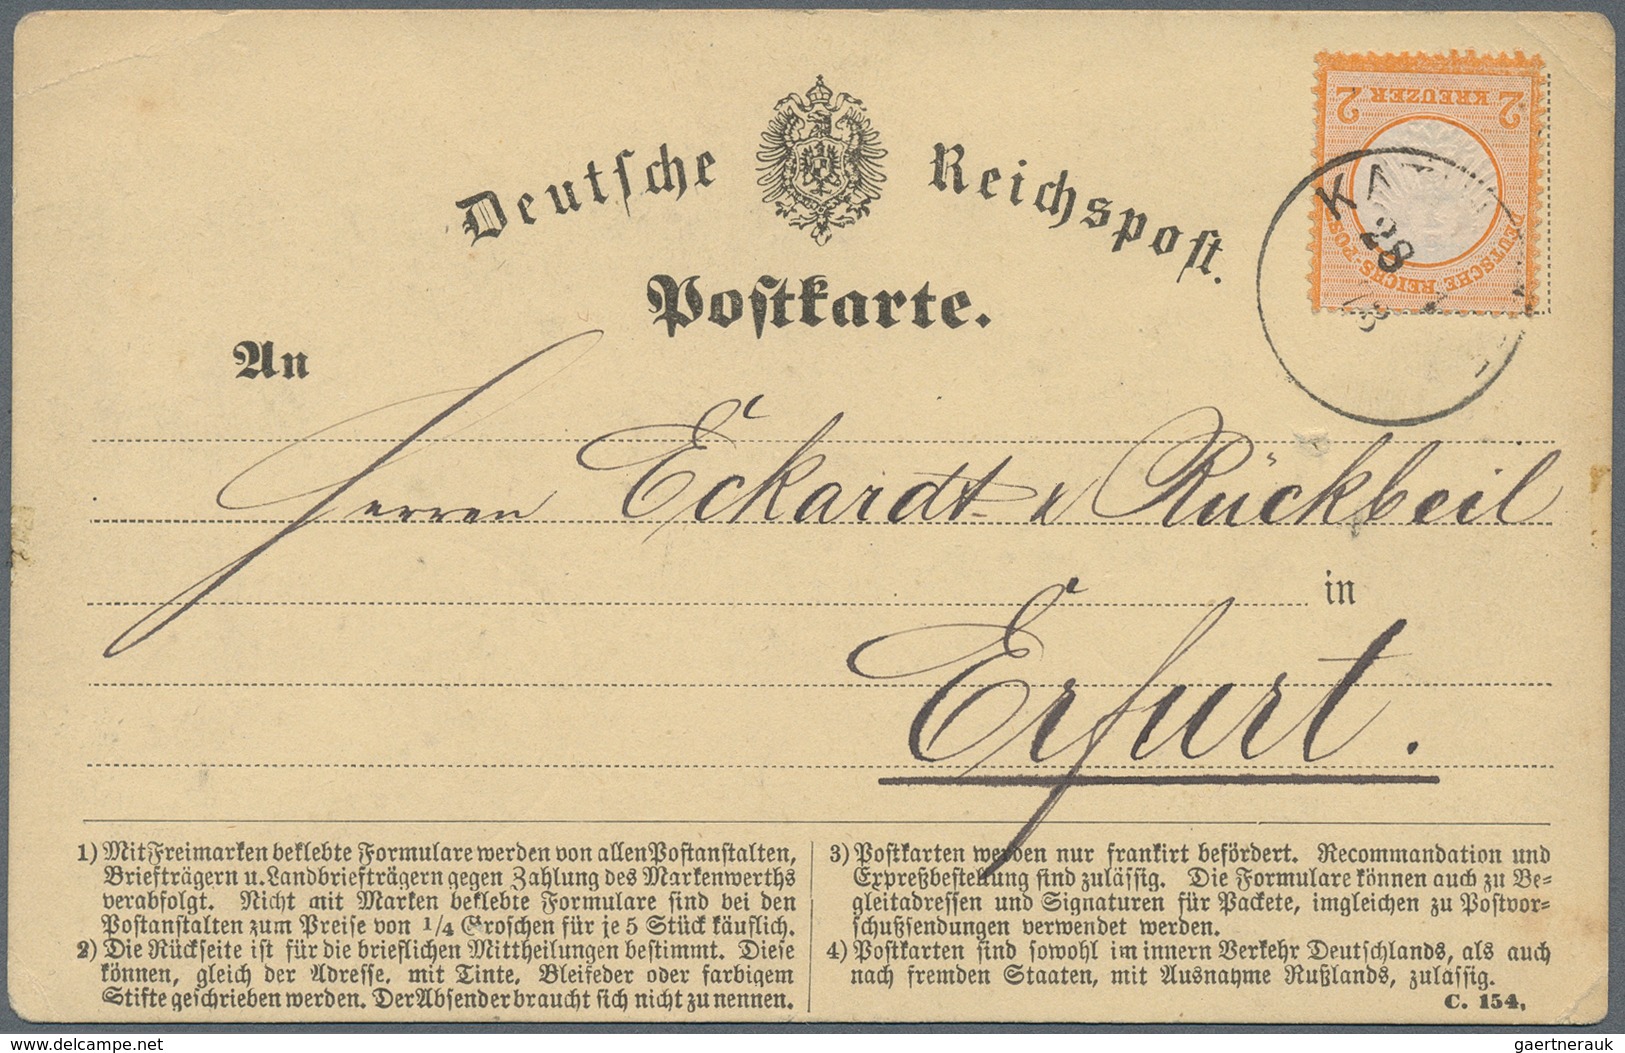 Deutsches Reich: 1872/1920 (ca.), Posten von ca. 90 Belegen ab den Brustschilden bis Germania, dabei